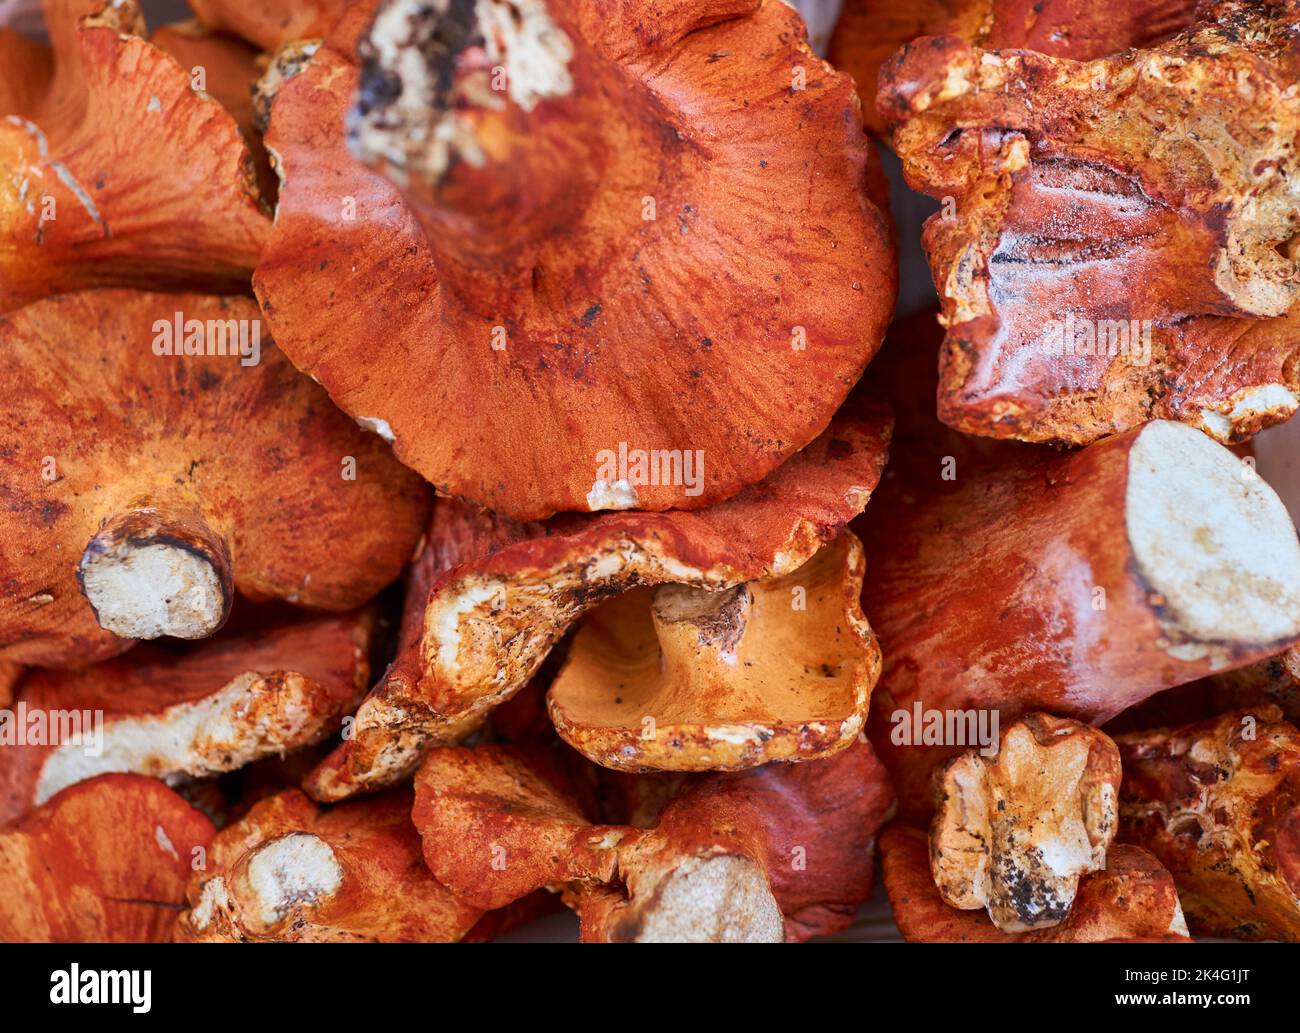 Les champignons de homard sont des champignons viandés et peuvent être cuits de plusieurs façons. Belle couleur orange-jaune. Bio, issu des forêts de NJ, Etats-Unis Banque D'Images